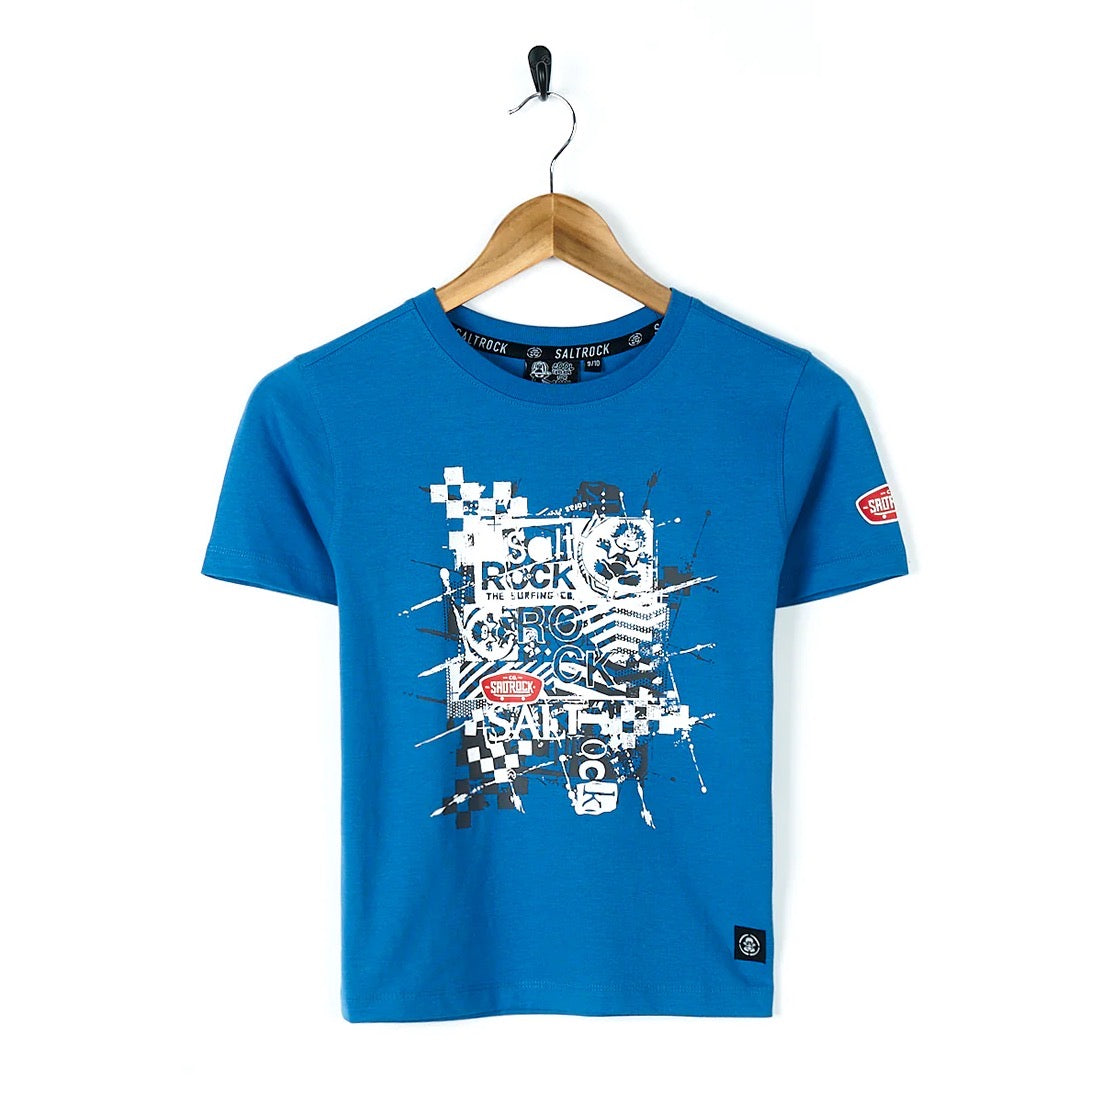 Saltrock Warp Mashup Kids T-Shirt Clothing 7/8YRS / Blue,9/10YRS / Blue,11/12YRS / Blue,13YRS / Blue